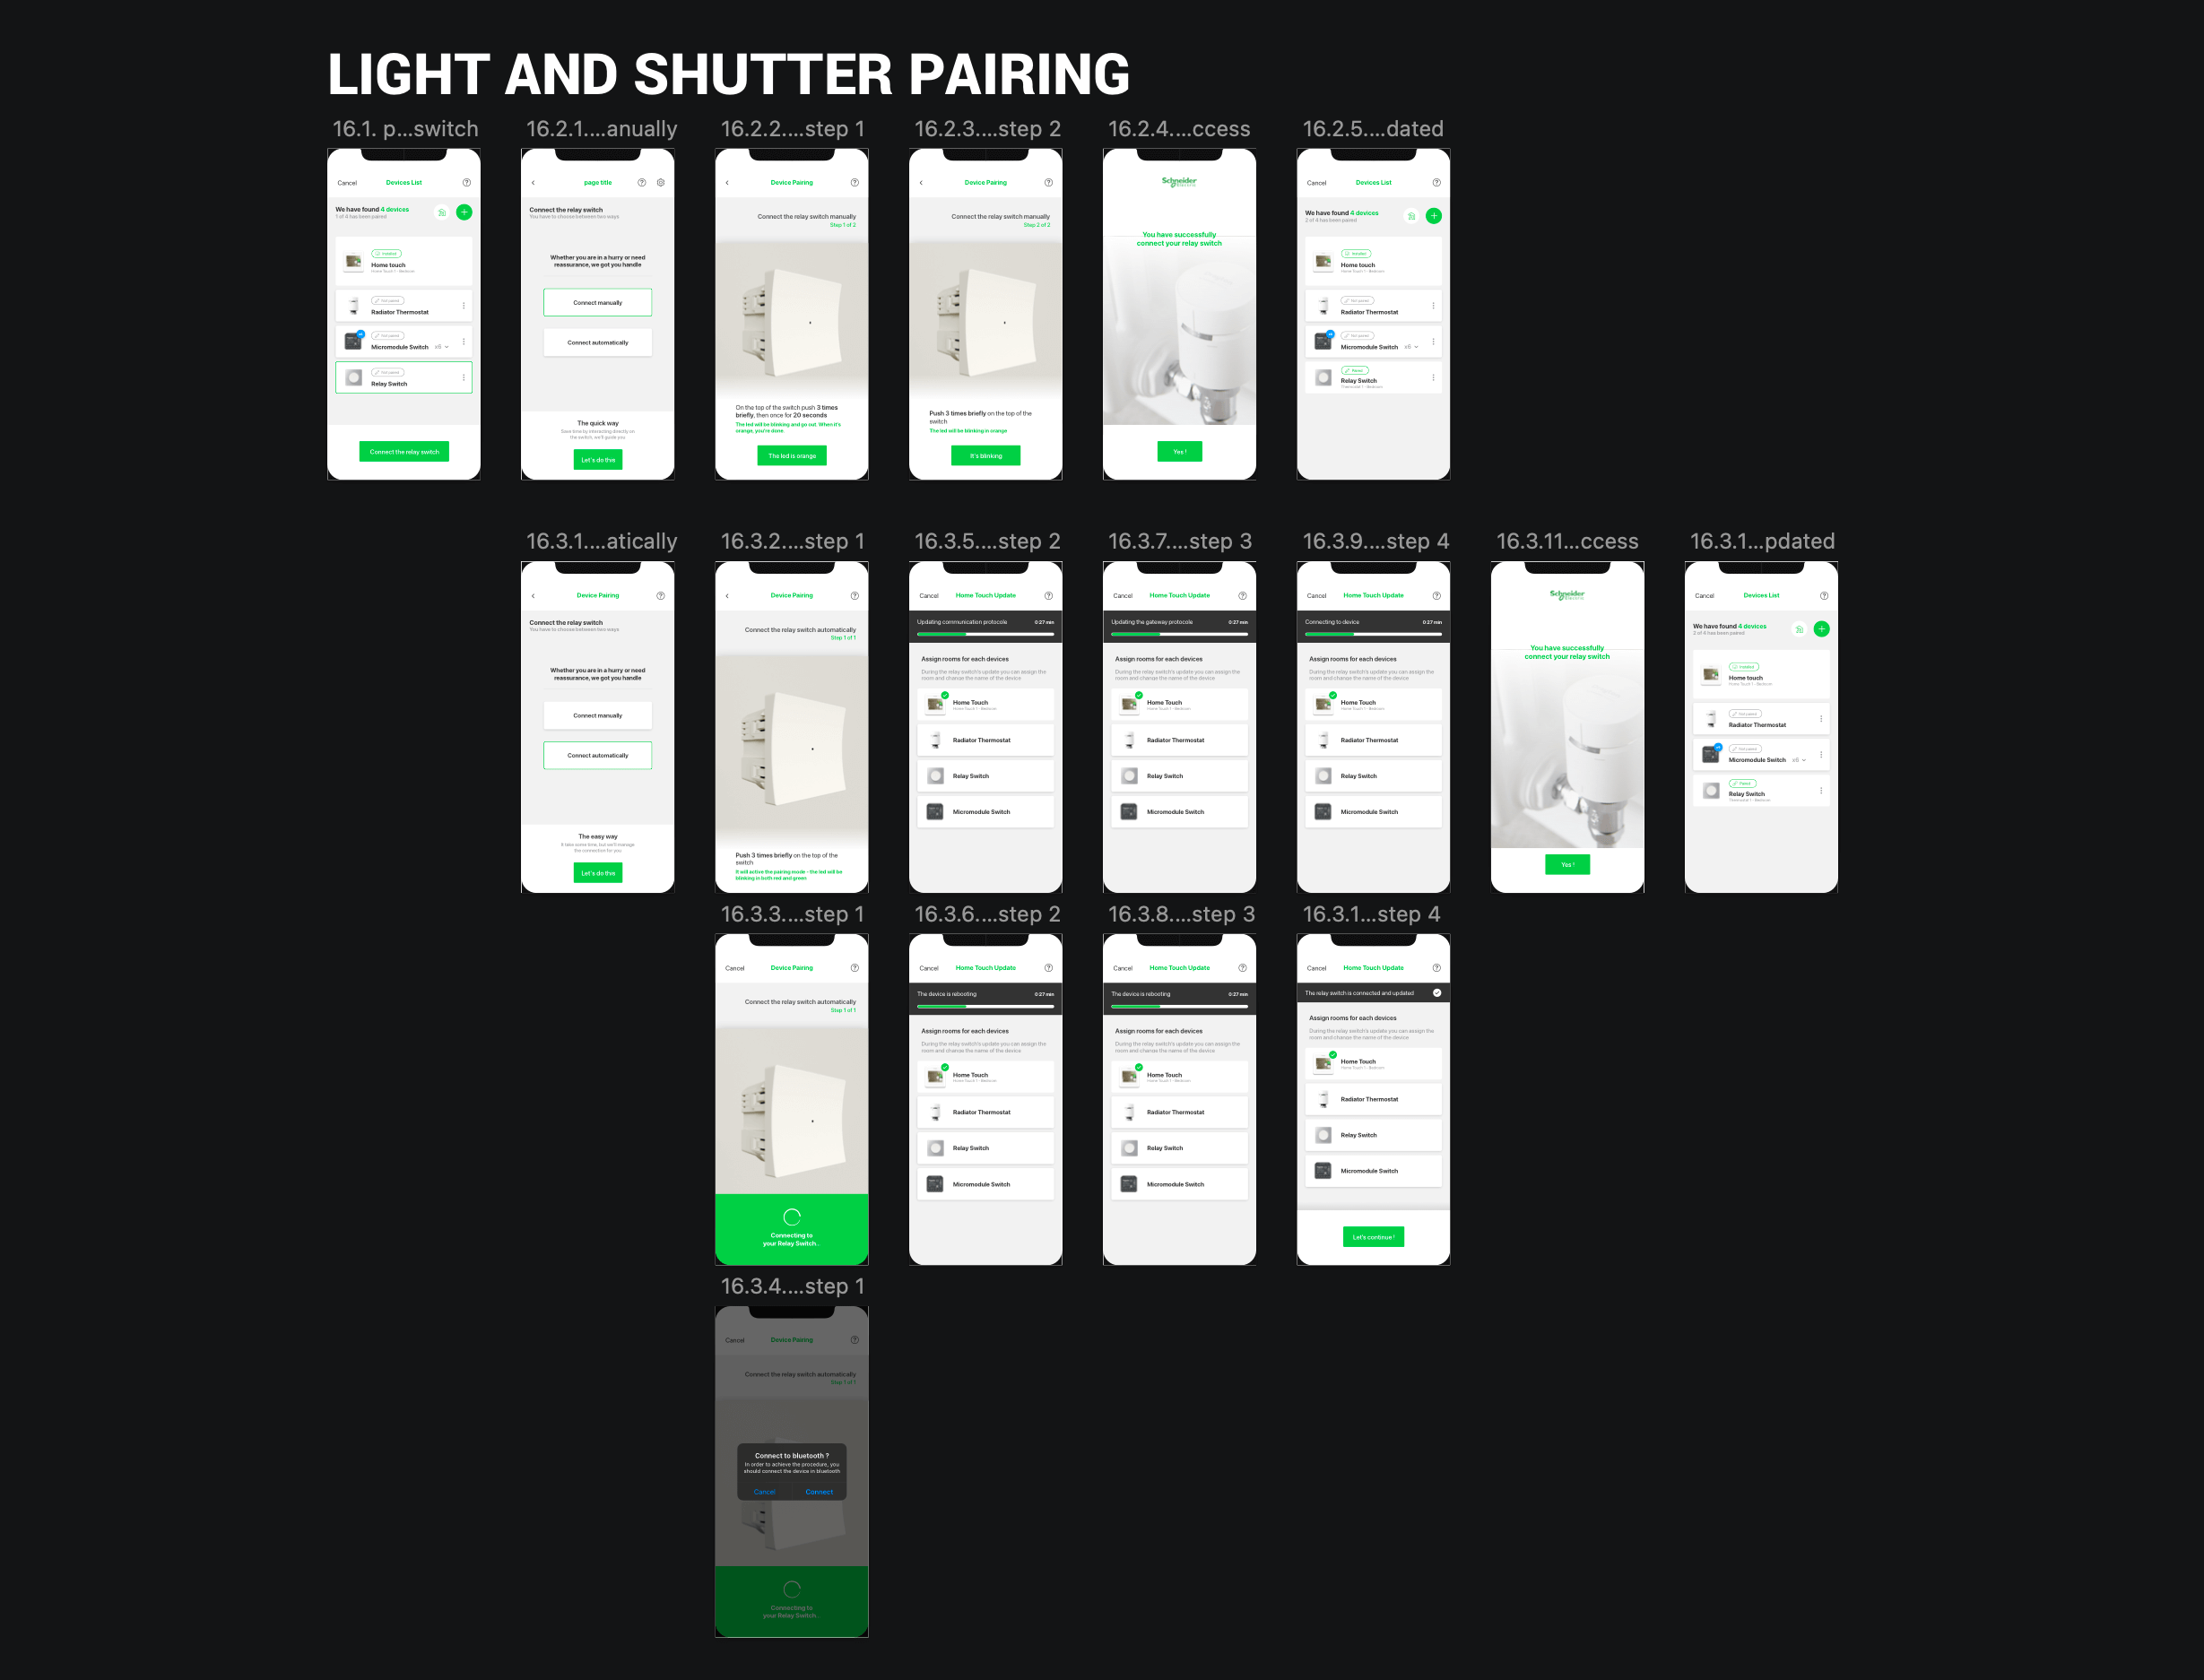 Light & shutter pairing